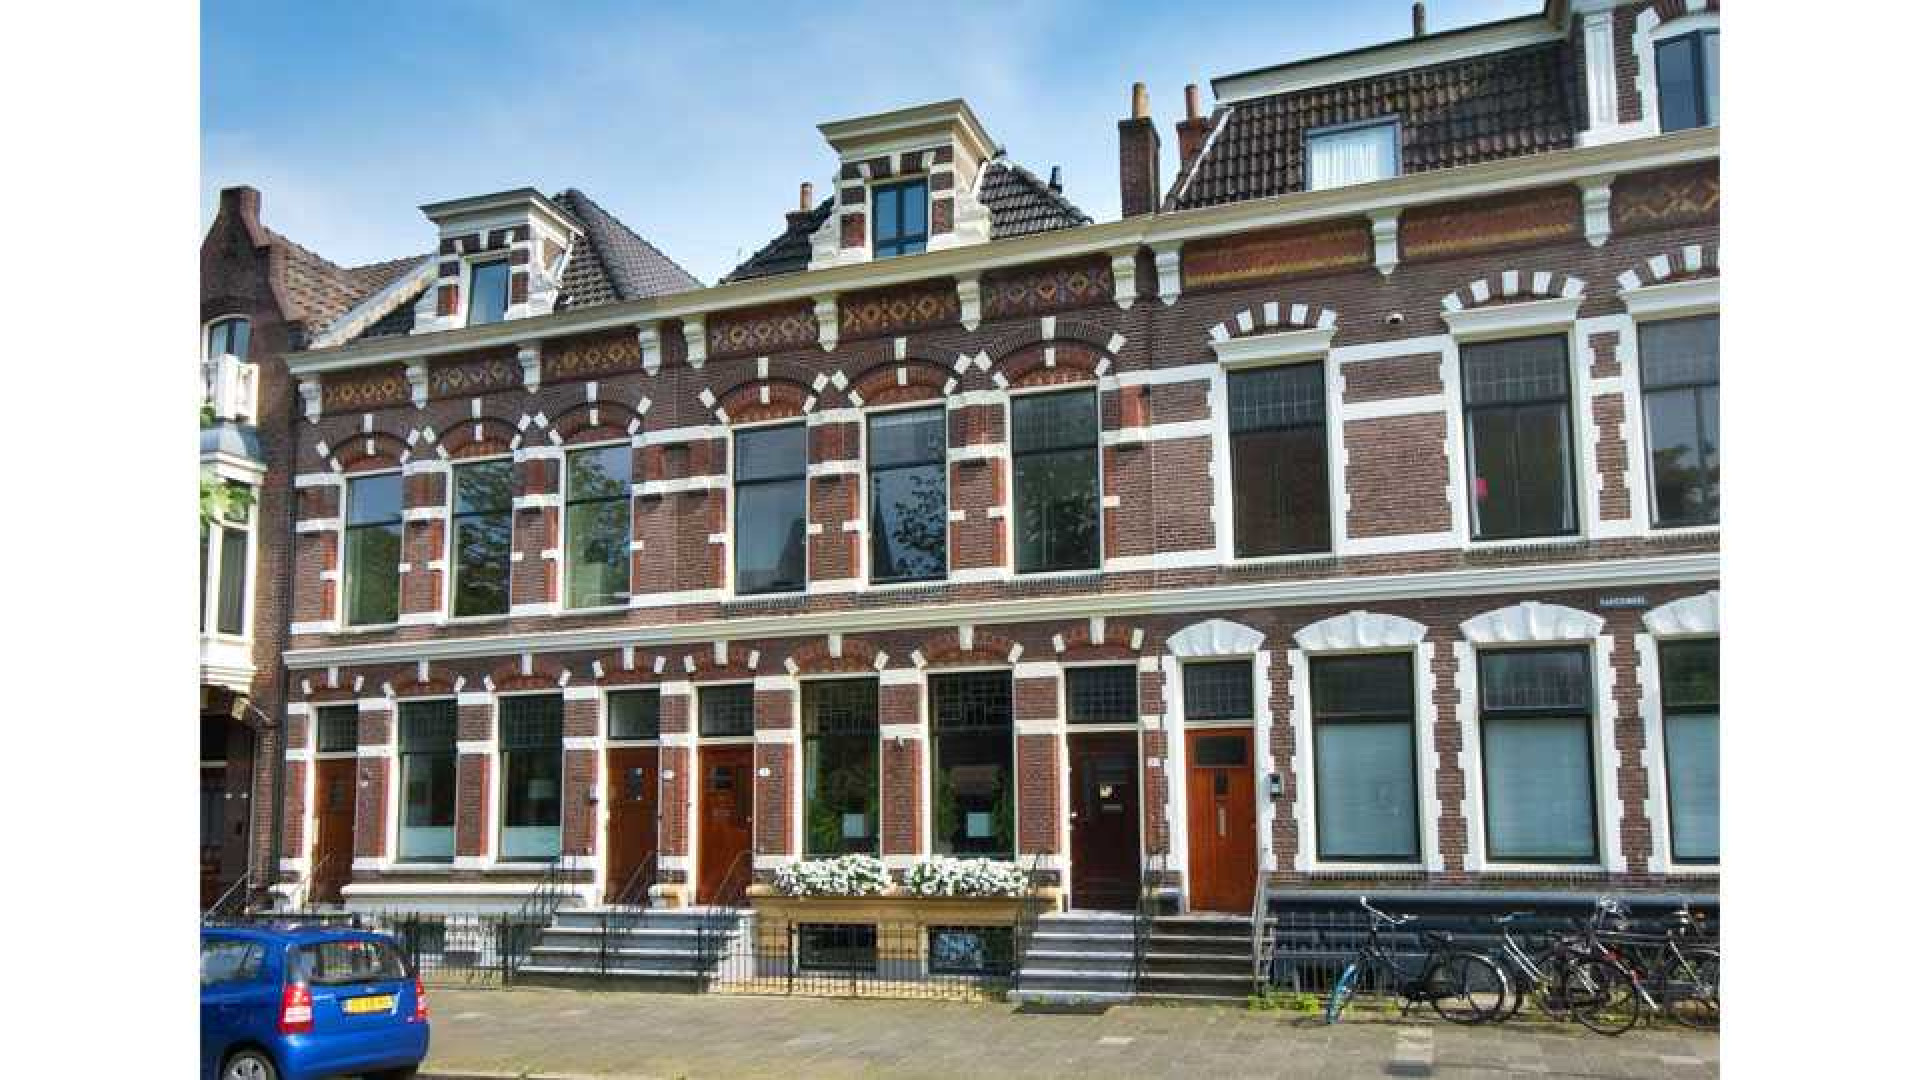 Victoria Koblenko en haar vriend Levchenko zetten hun dubbele bovenhuis in Groningen te koop. Zie foto's 1